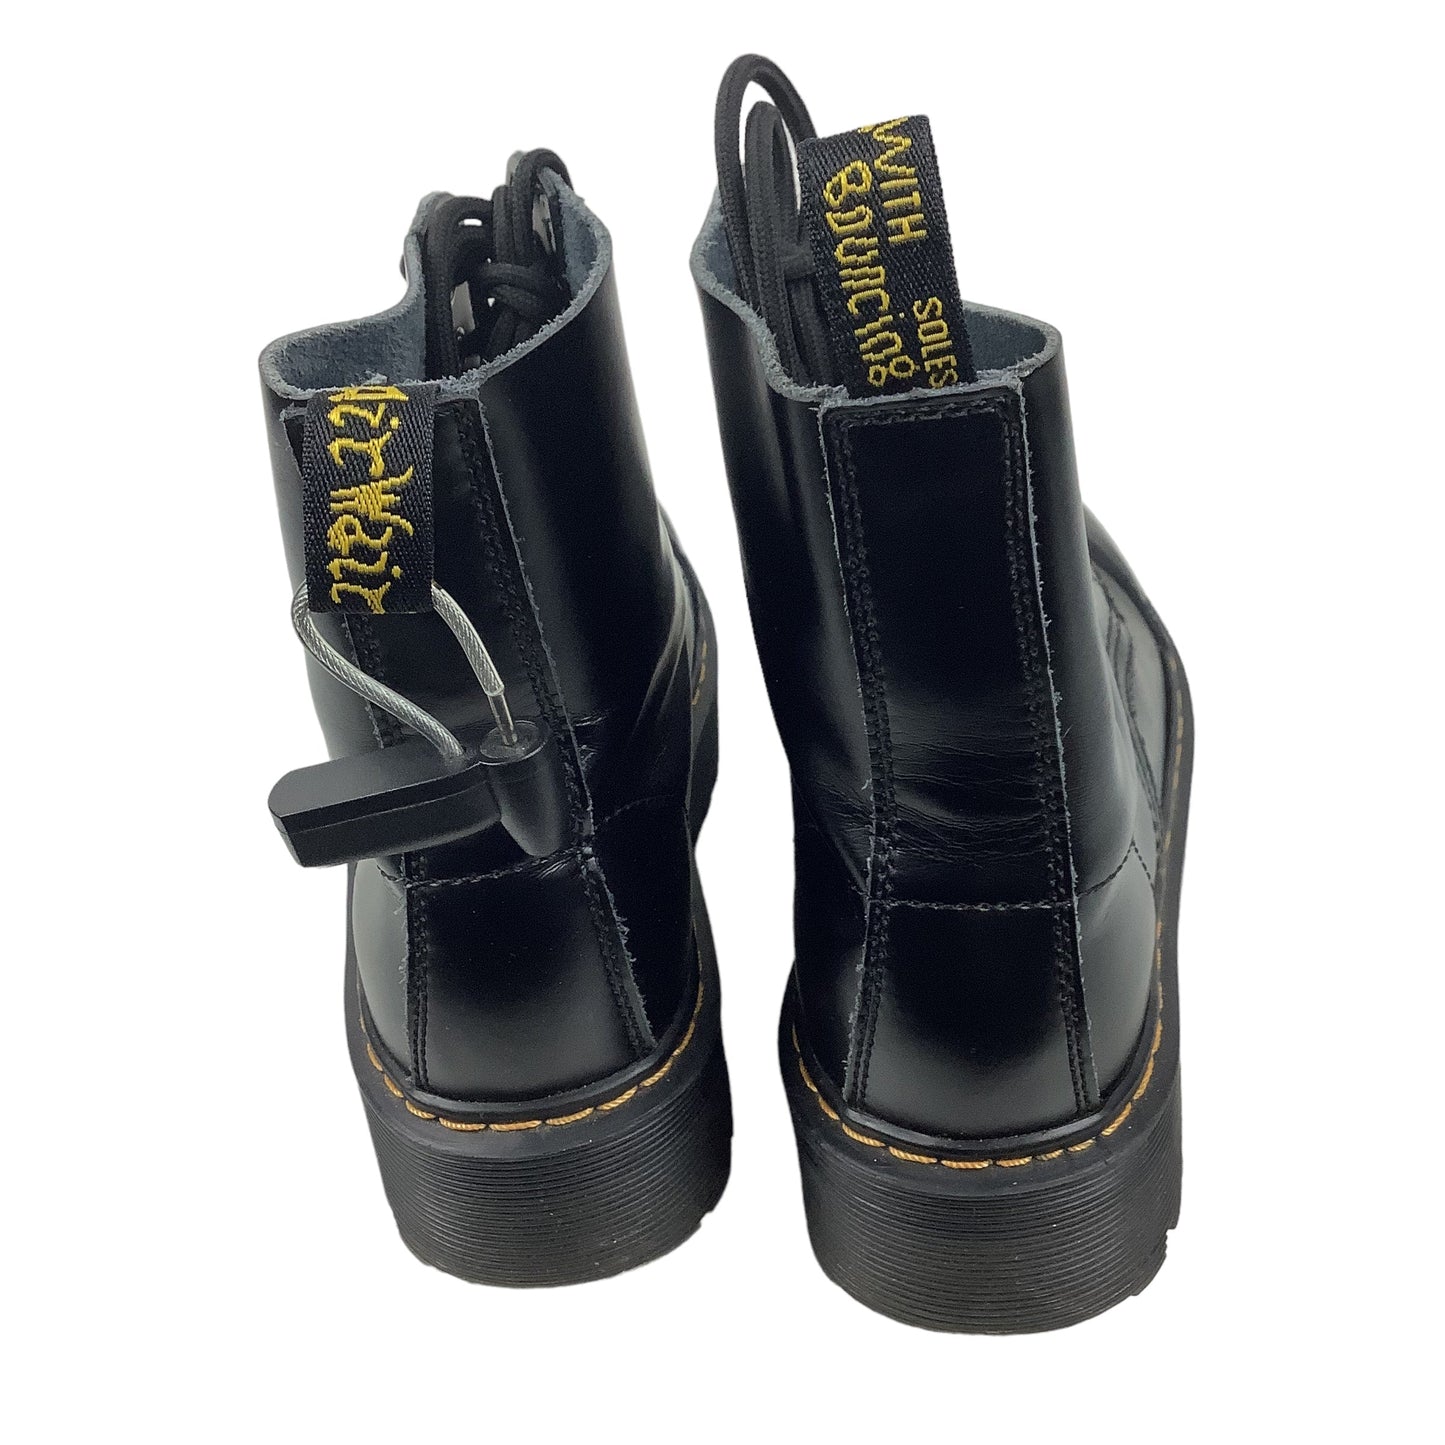 Black Boots Designer Dr Martens, Size 9